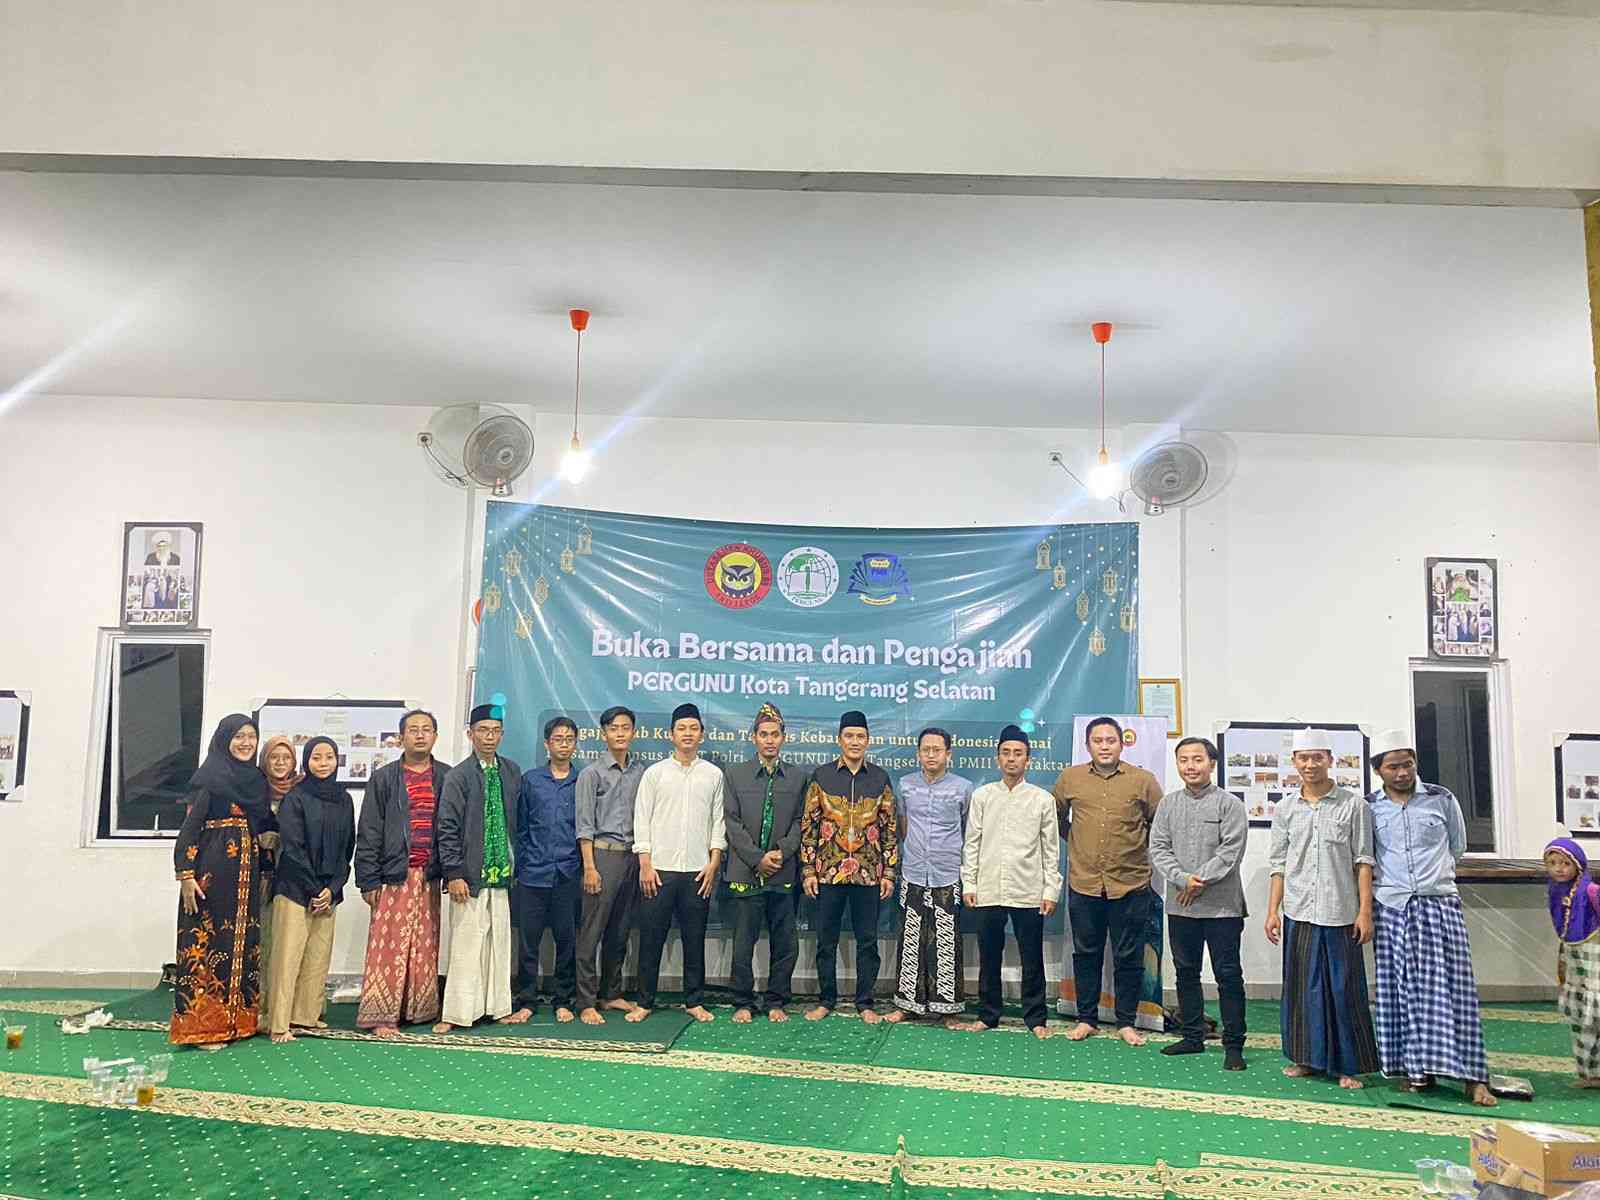 Bukber Bersama Polri & Densus 88 bersama PMII Komfaktar UIN Syarif Hidayatullah Jakarta